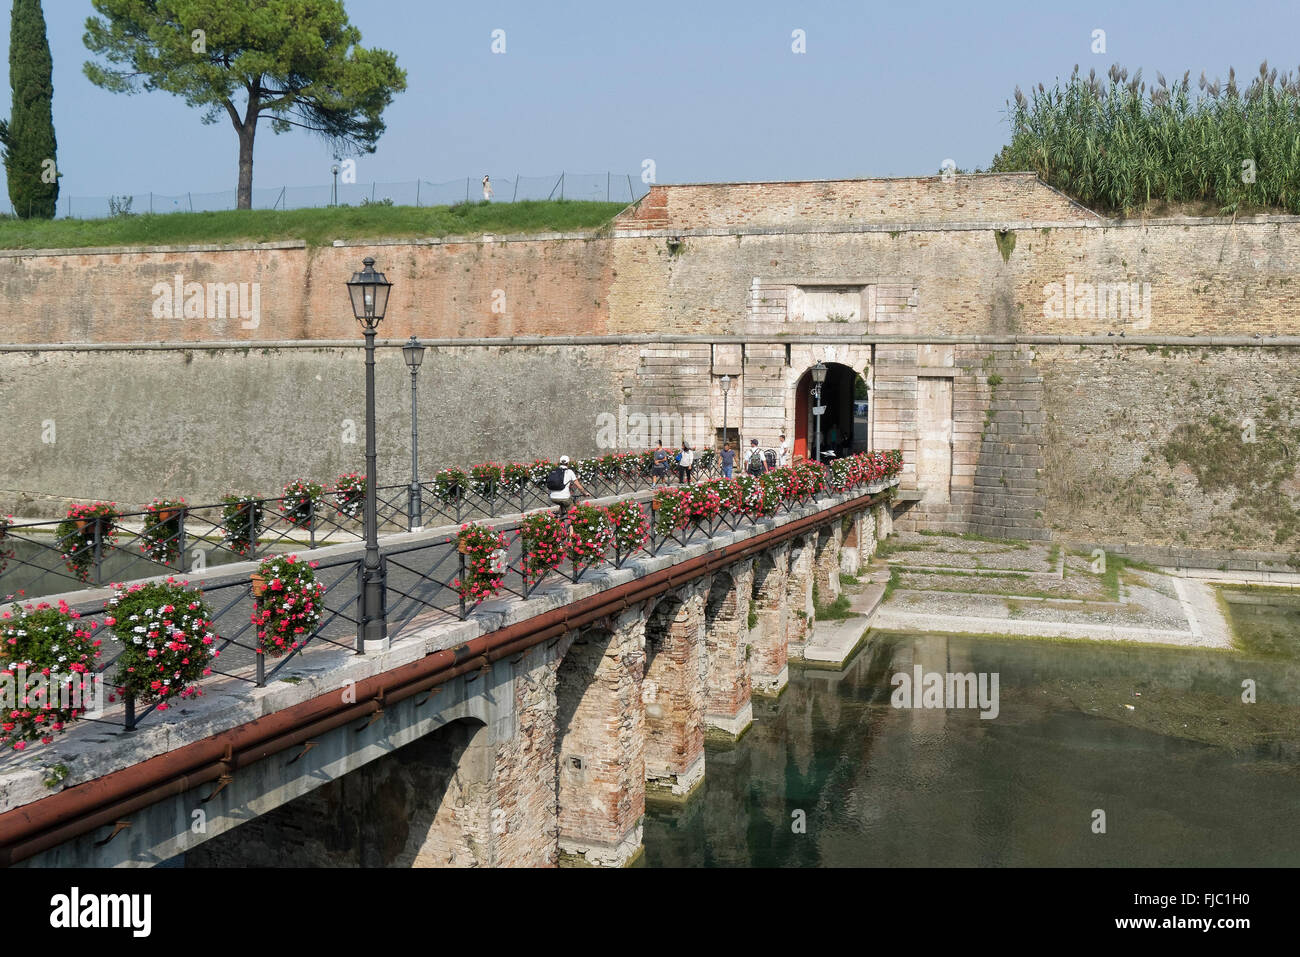 Festungsgraben, Porta Brescia, Peschiera del Garda, Venetien, Italien |  Moat, Porta Brescia, Peschiera del Garda, Veneto, Italy Stock Photo - Alamy